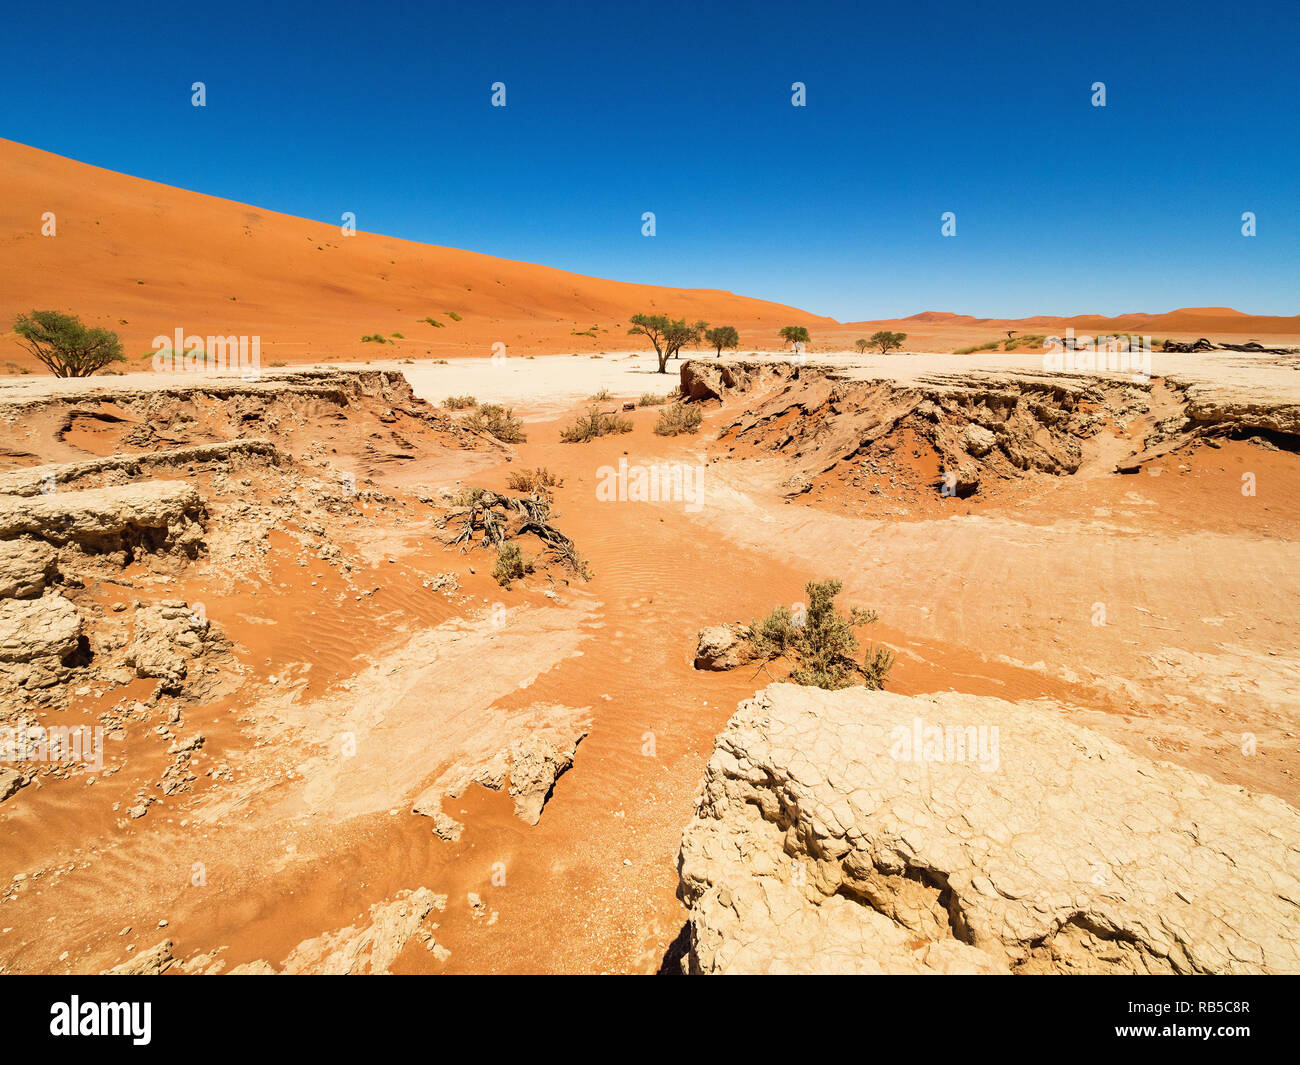 Paysage désertique avec dunes rouges et arbres Camelthorn morts et rootsat à Deadvlei Sossusvlei pan, sel. Le Parc National Namib Naukluft, Namibie Banque D'Images